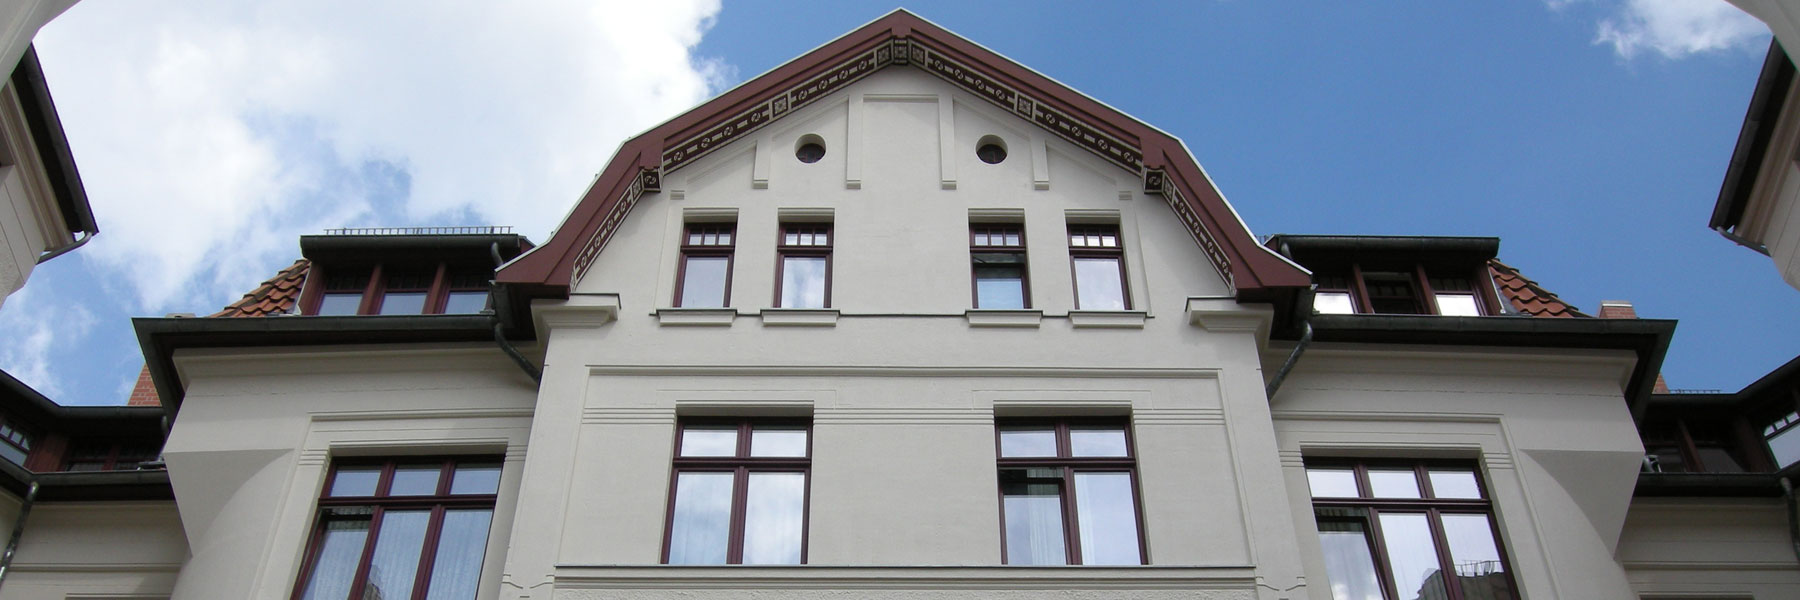 Denkmalgerechte Fassadensanierung eines stadtbildprägenden Gebäudeensembles, Hannover 